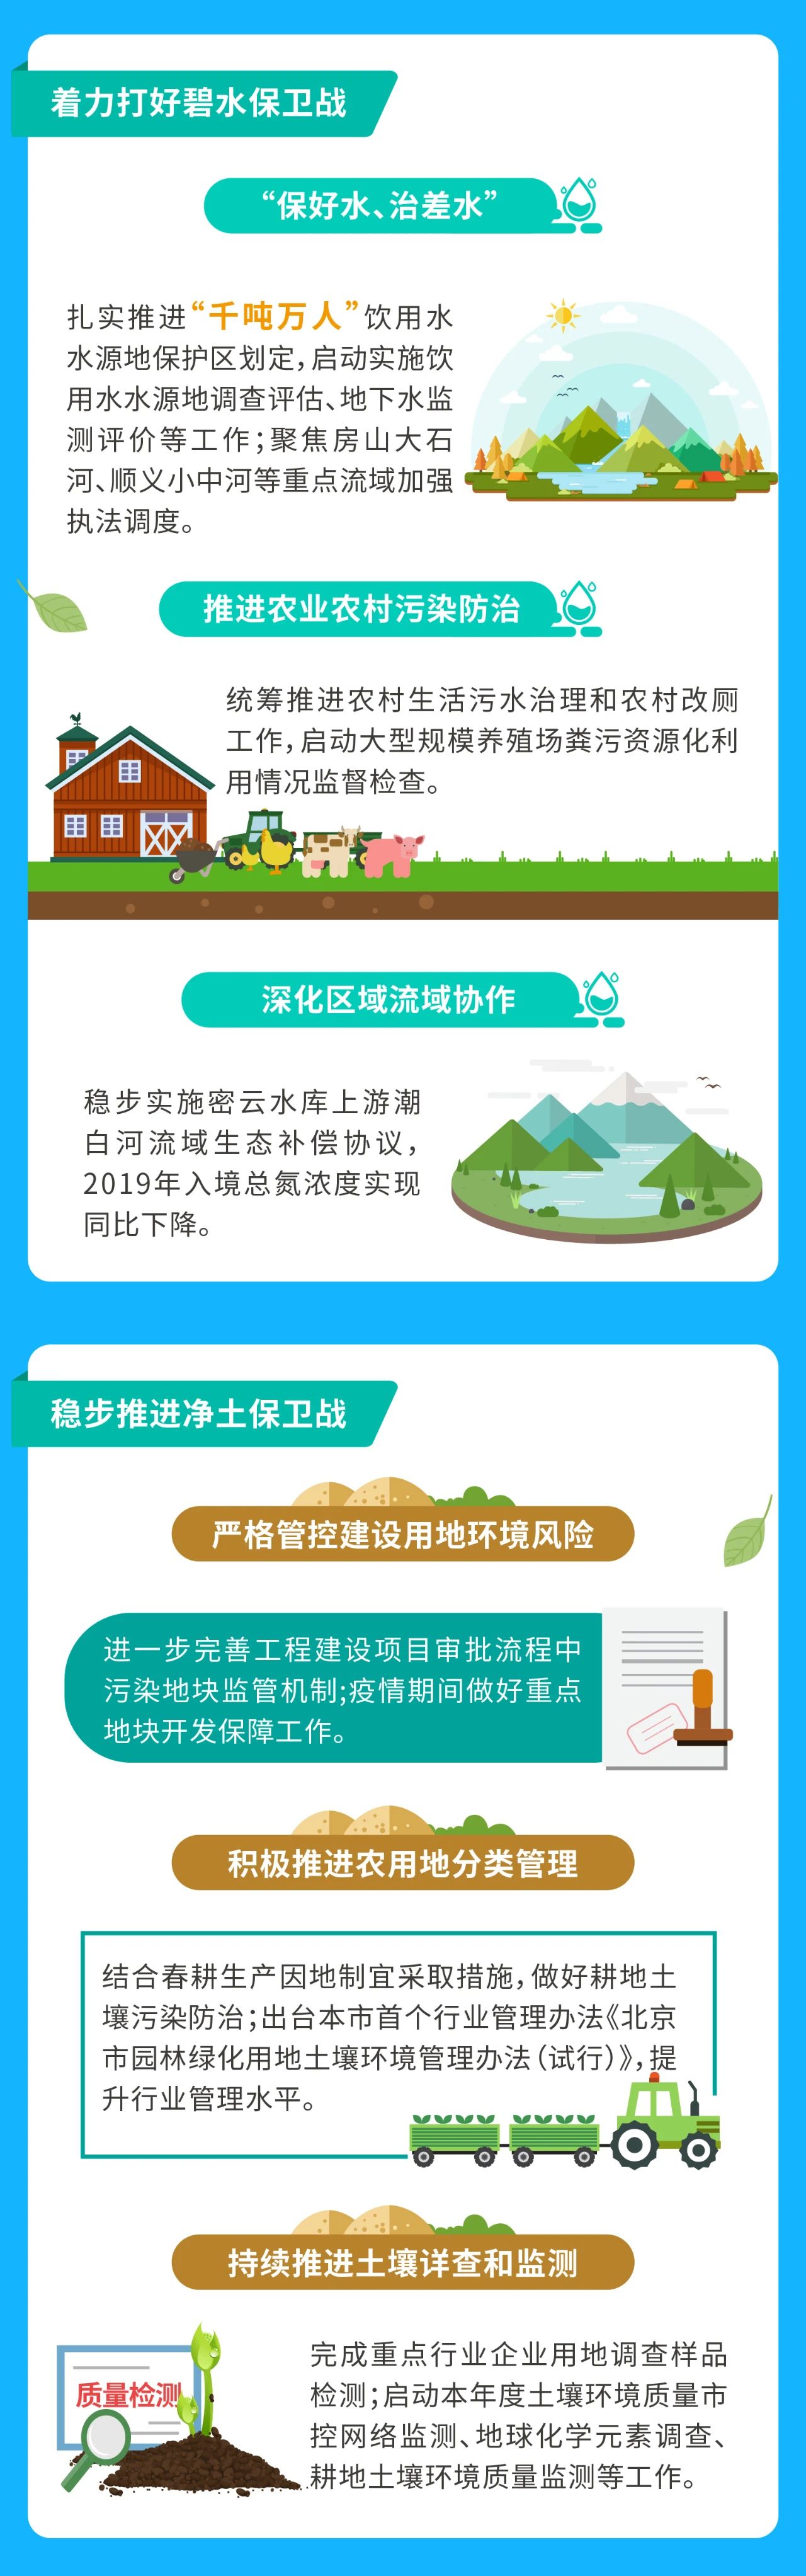 圖説一季度北京生態環境品質